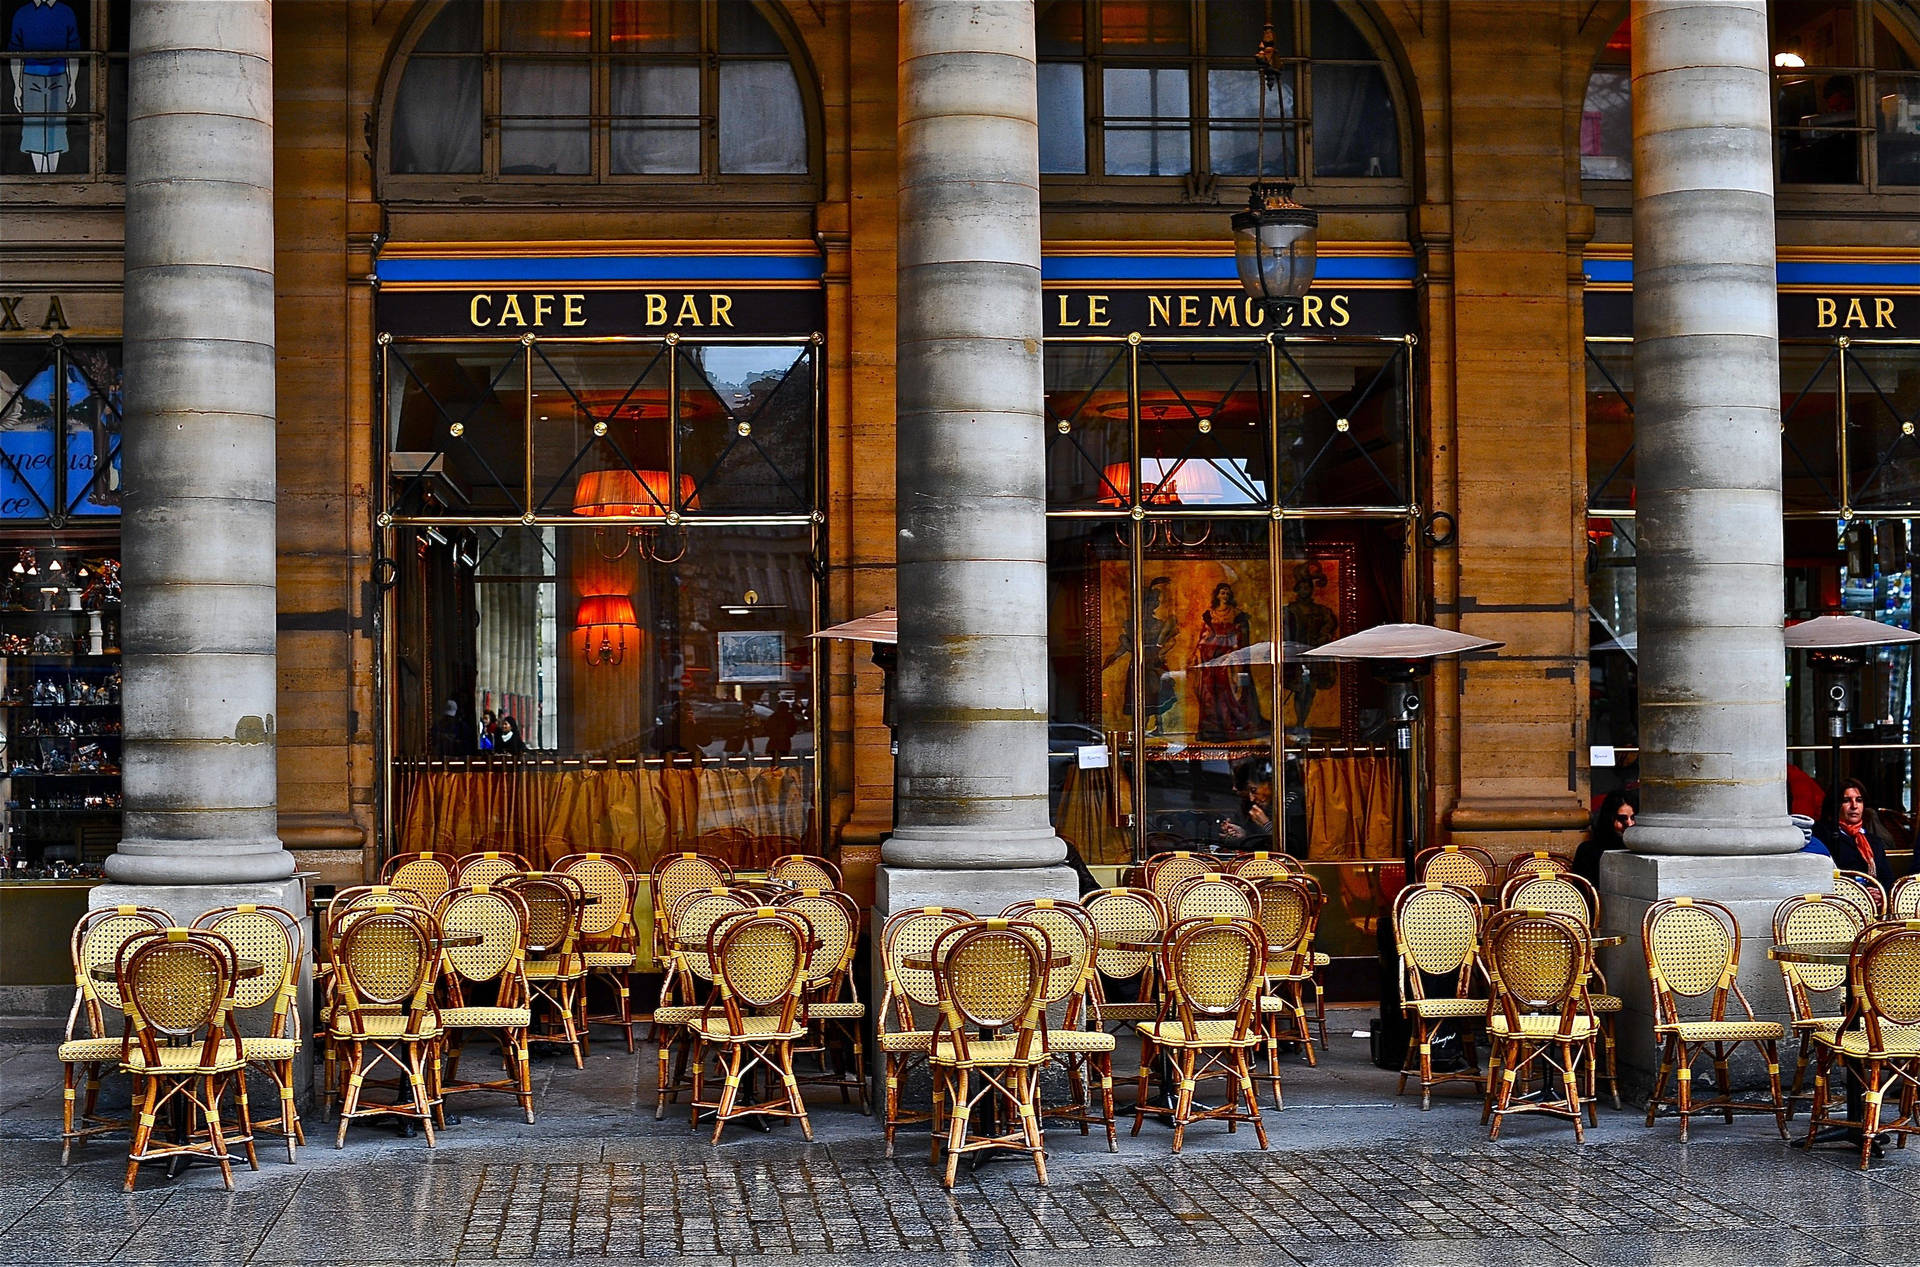 Le Nemours Cafe Bar In Paris Wallpaper